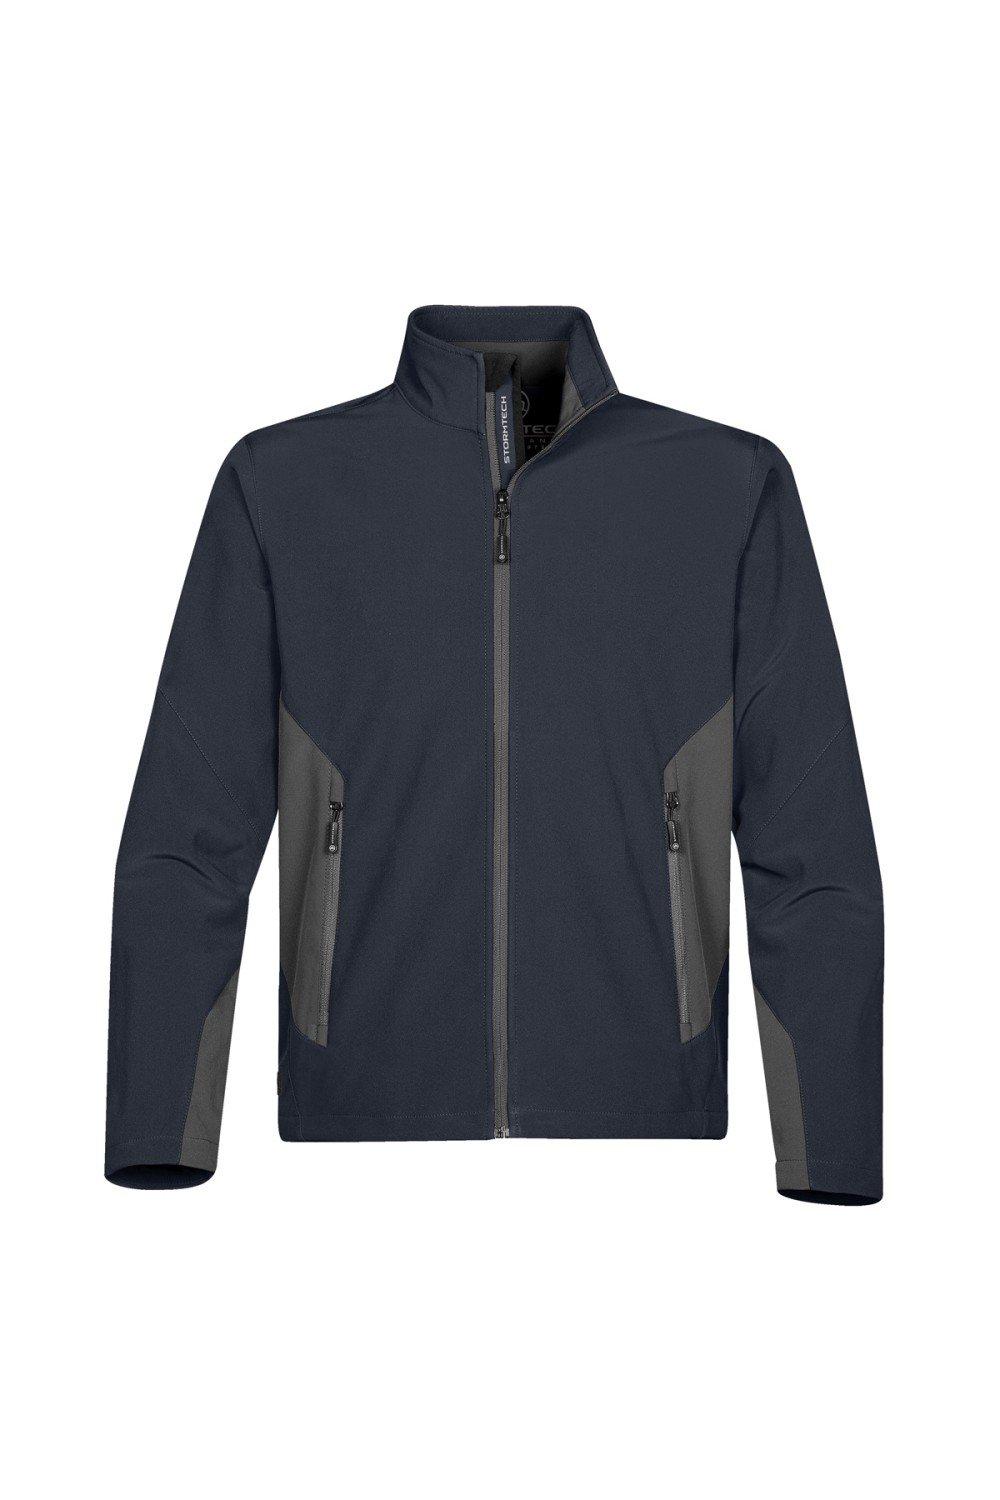 Куртка из софтшелла Pulse Stormtech, темно-синий легкая куртка pacifica stormtech темно синий